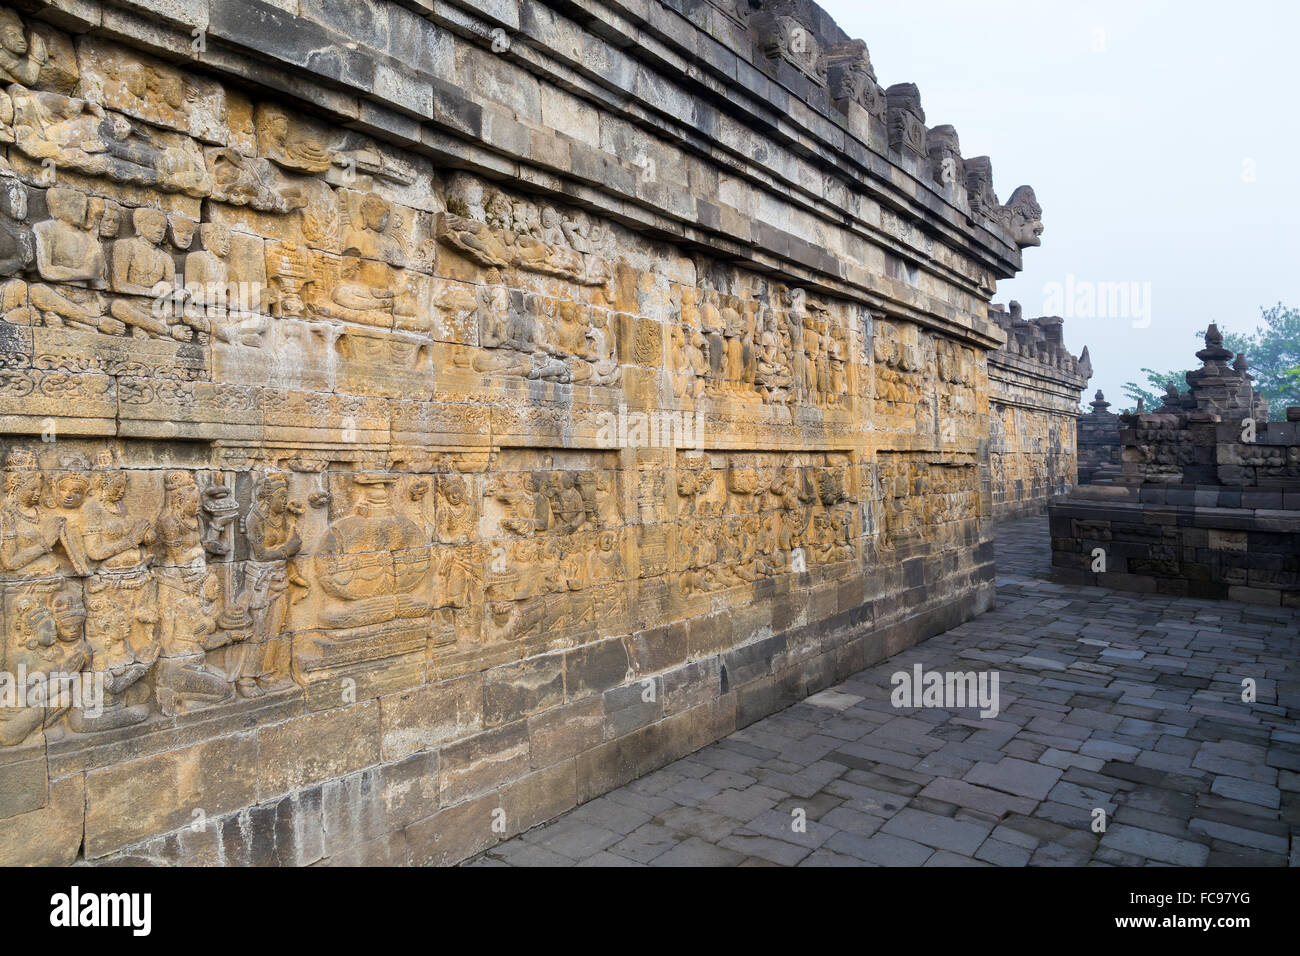 Pannelli di rilievo del tempio di Borobudur in Indonesia. Borobudur è il tempio buddista più grande del mondo. Foto Stock